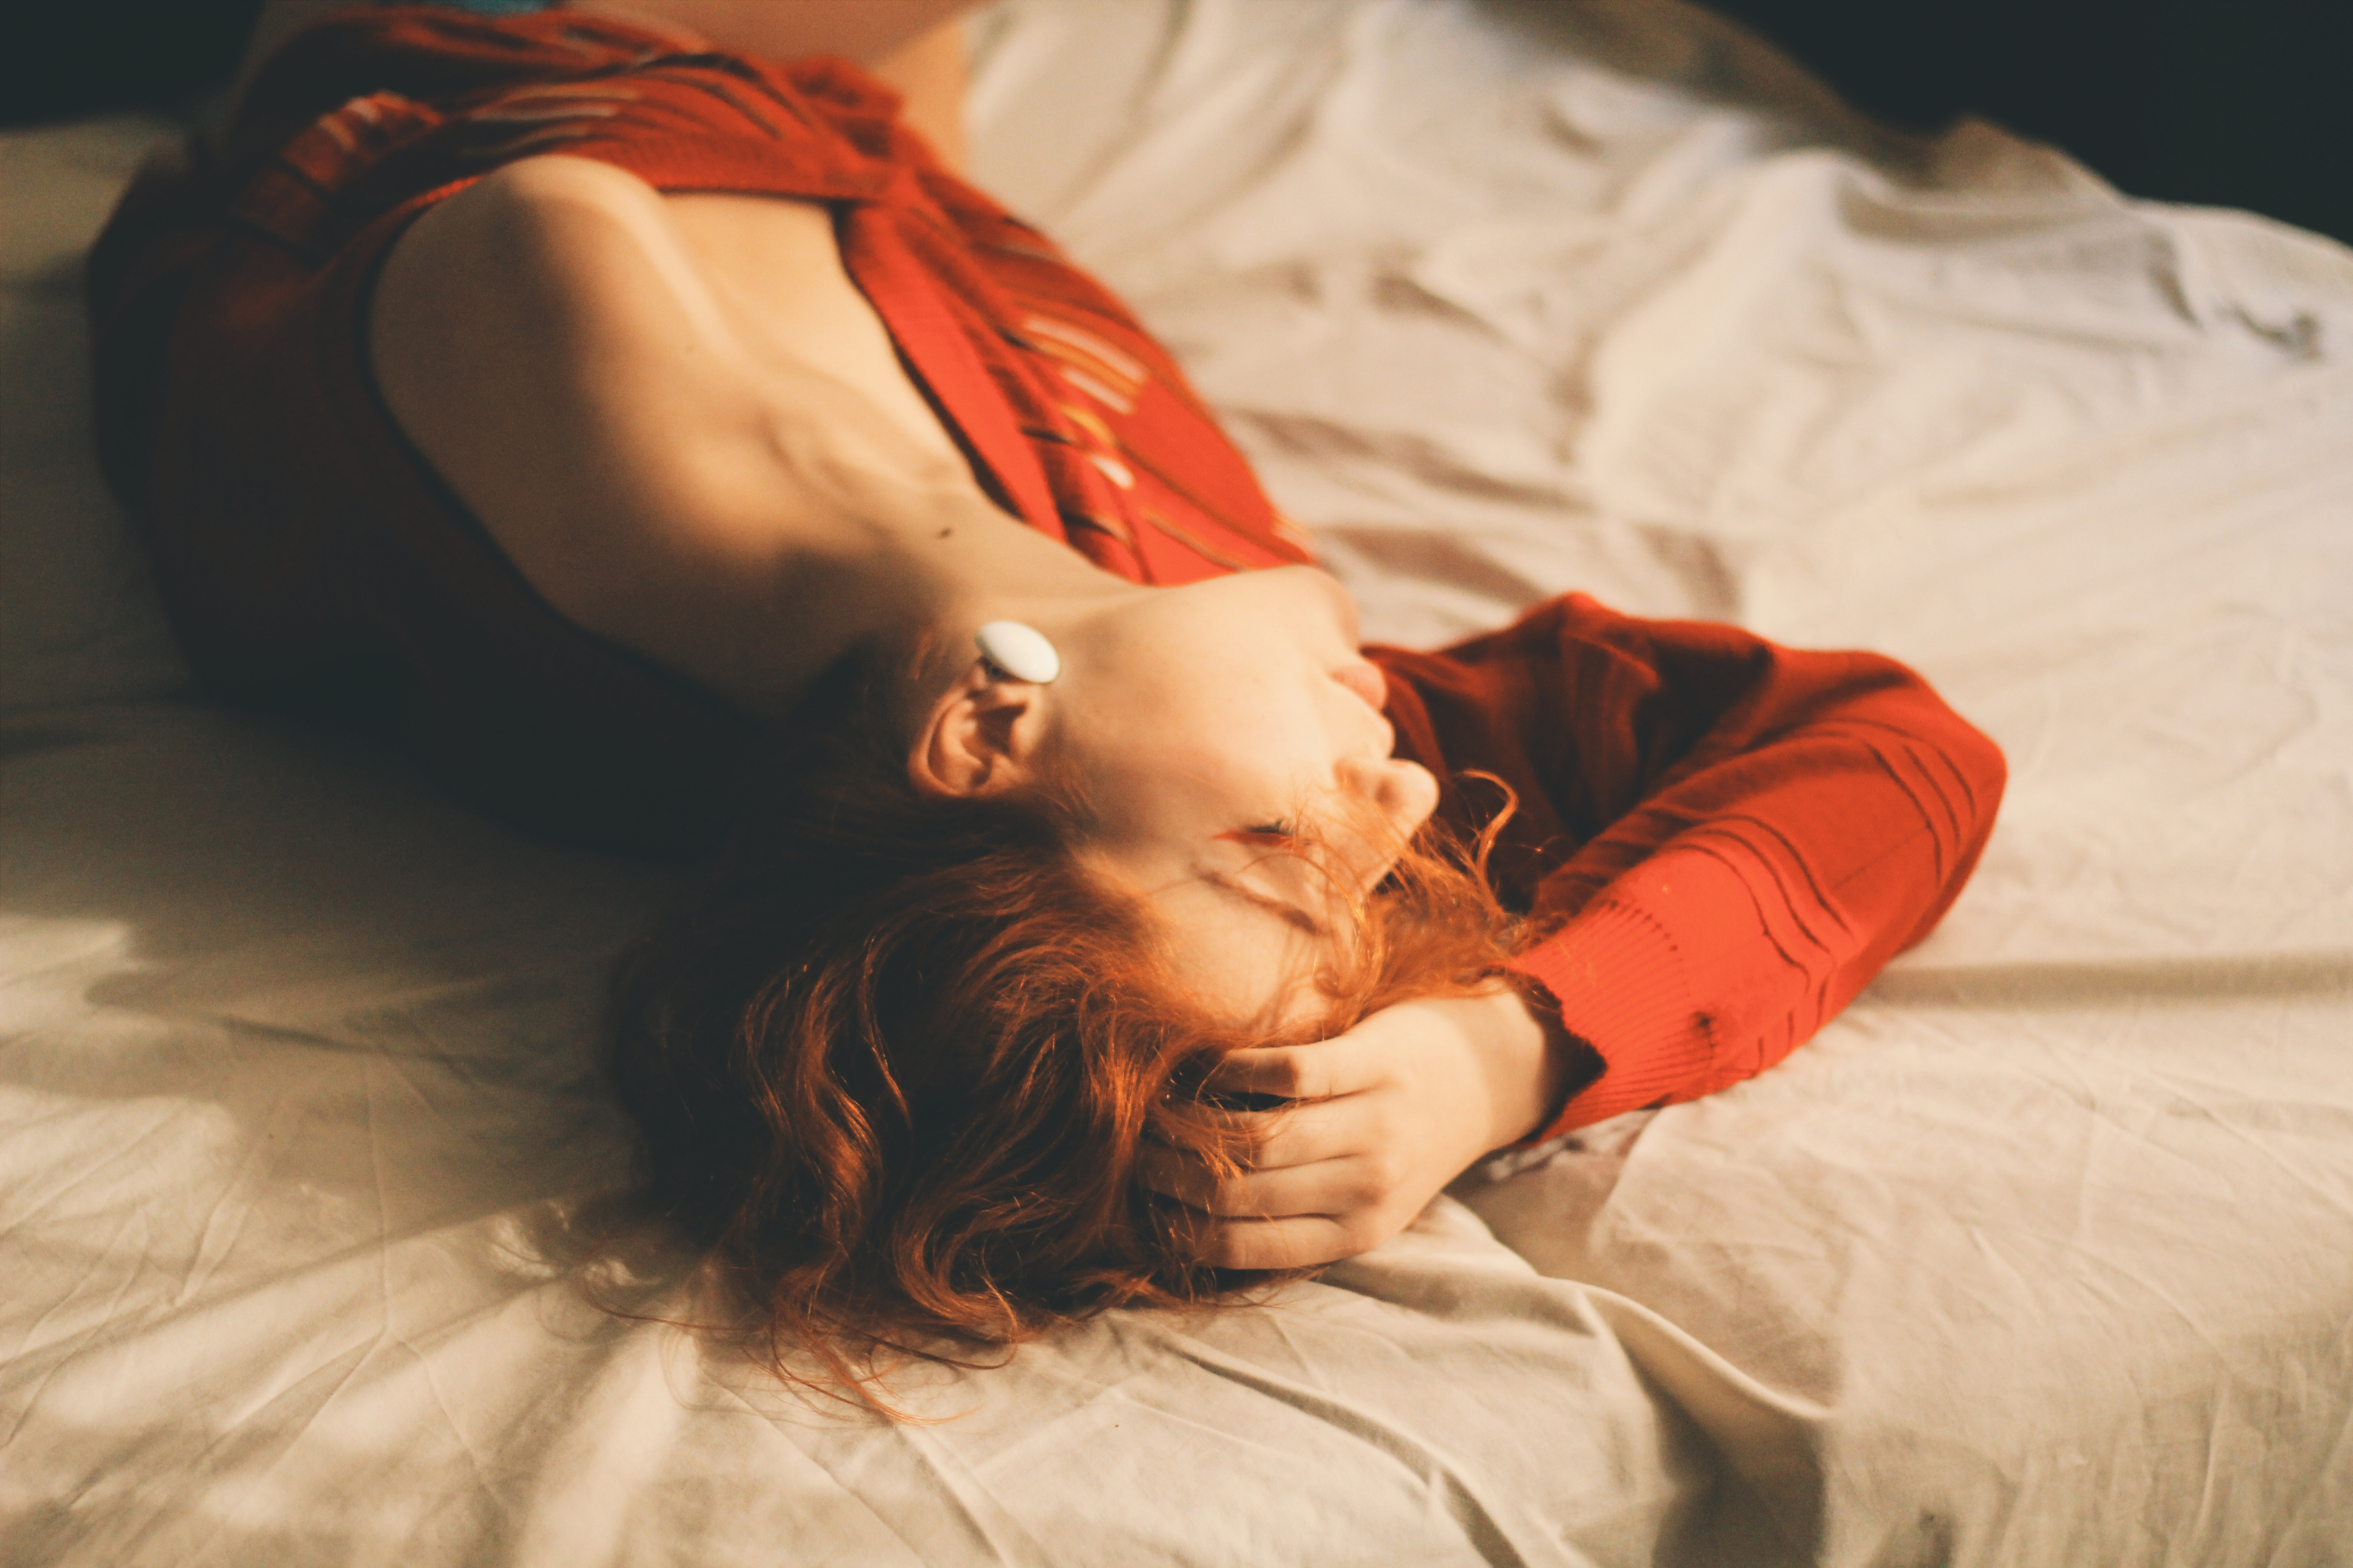 Рыженькая девушка с милым личиком дрочит киску в мягкой постели